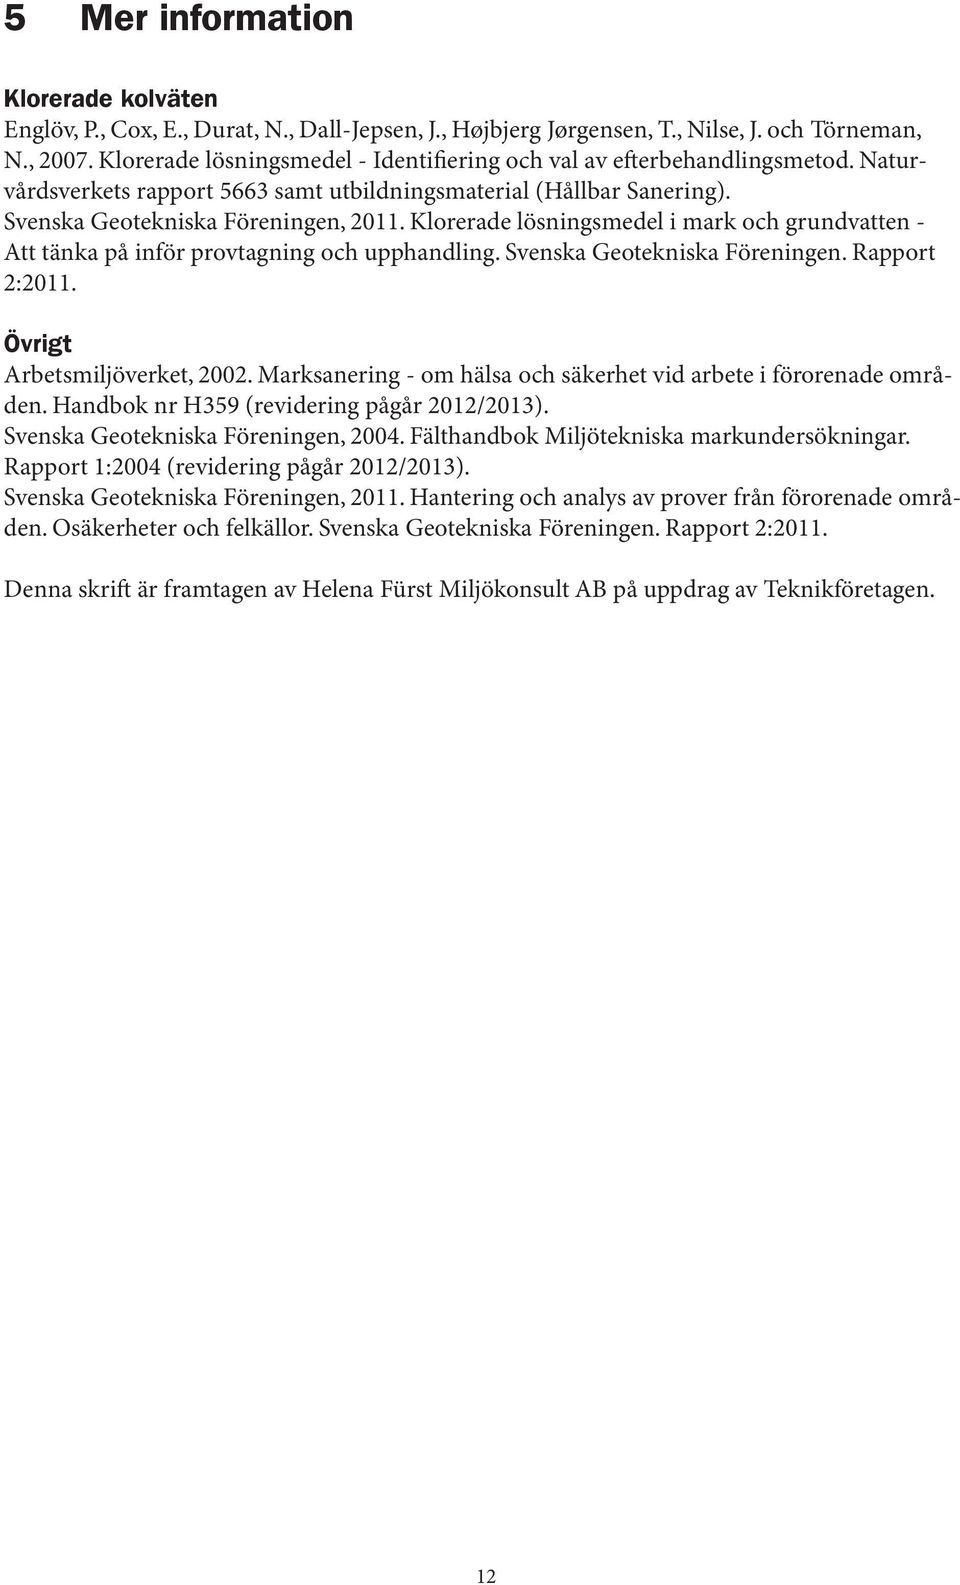 Klorerade lösningsmedel i mark och grundvatten - Att tänka på inför provtagning och upphandling. Svenska Geotekniska Föreningen. Rapport 2:2011. Övrigt Arbetsmiljöverket, 2002.